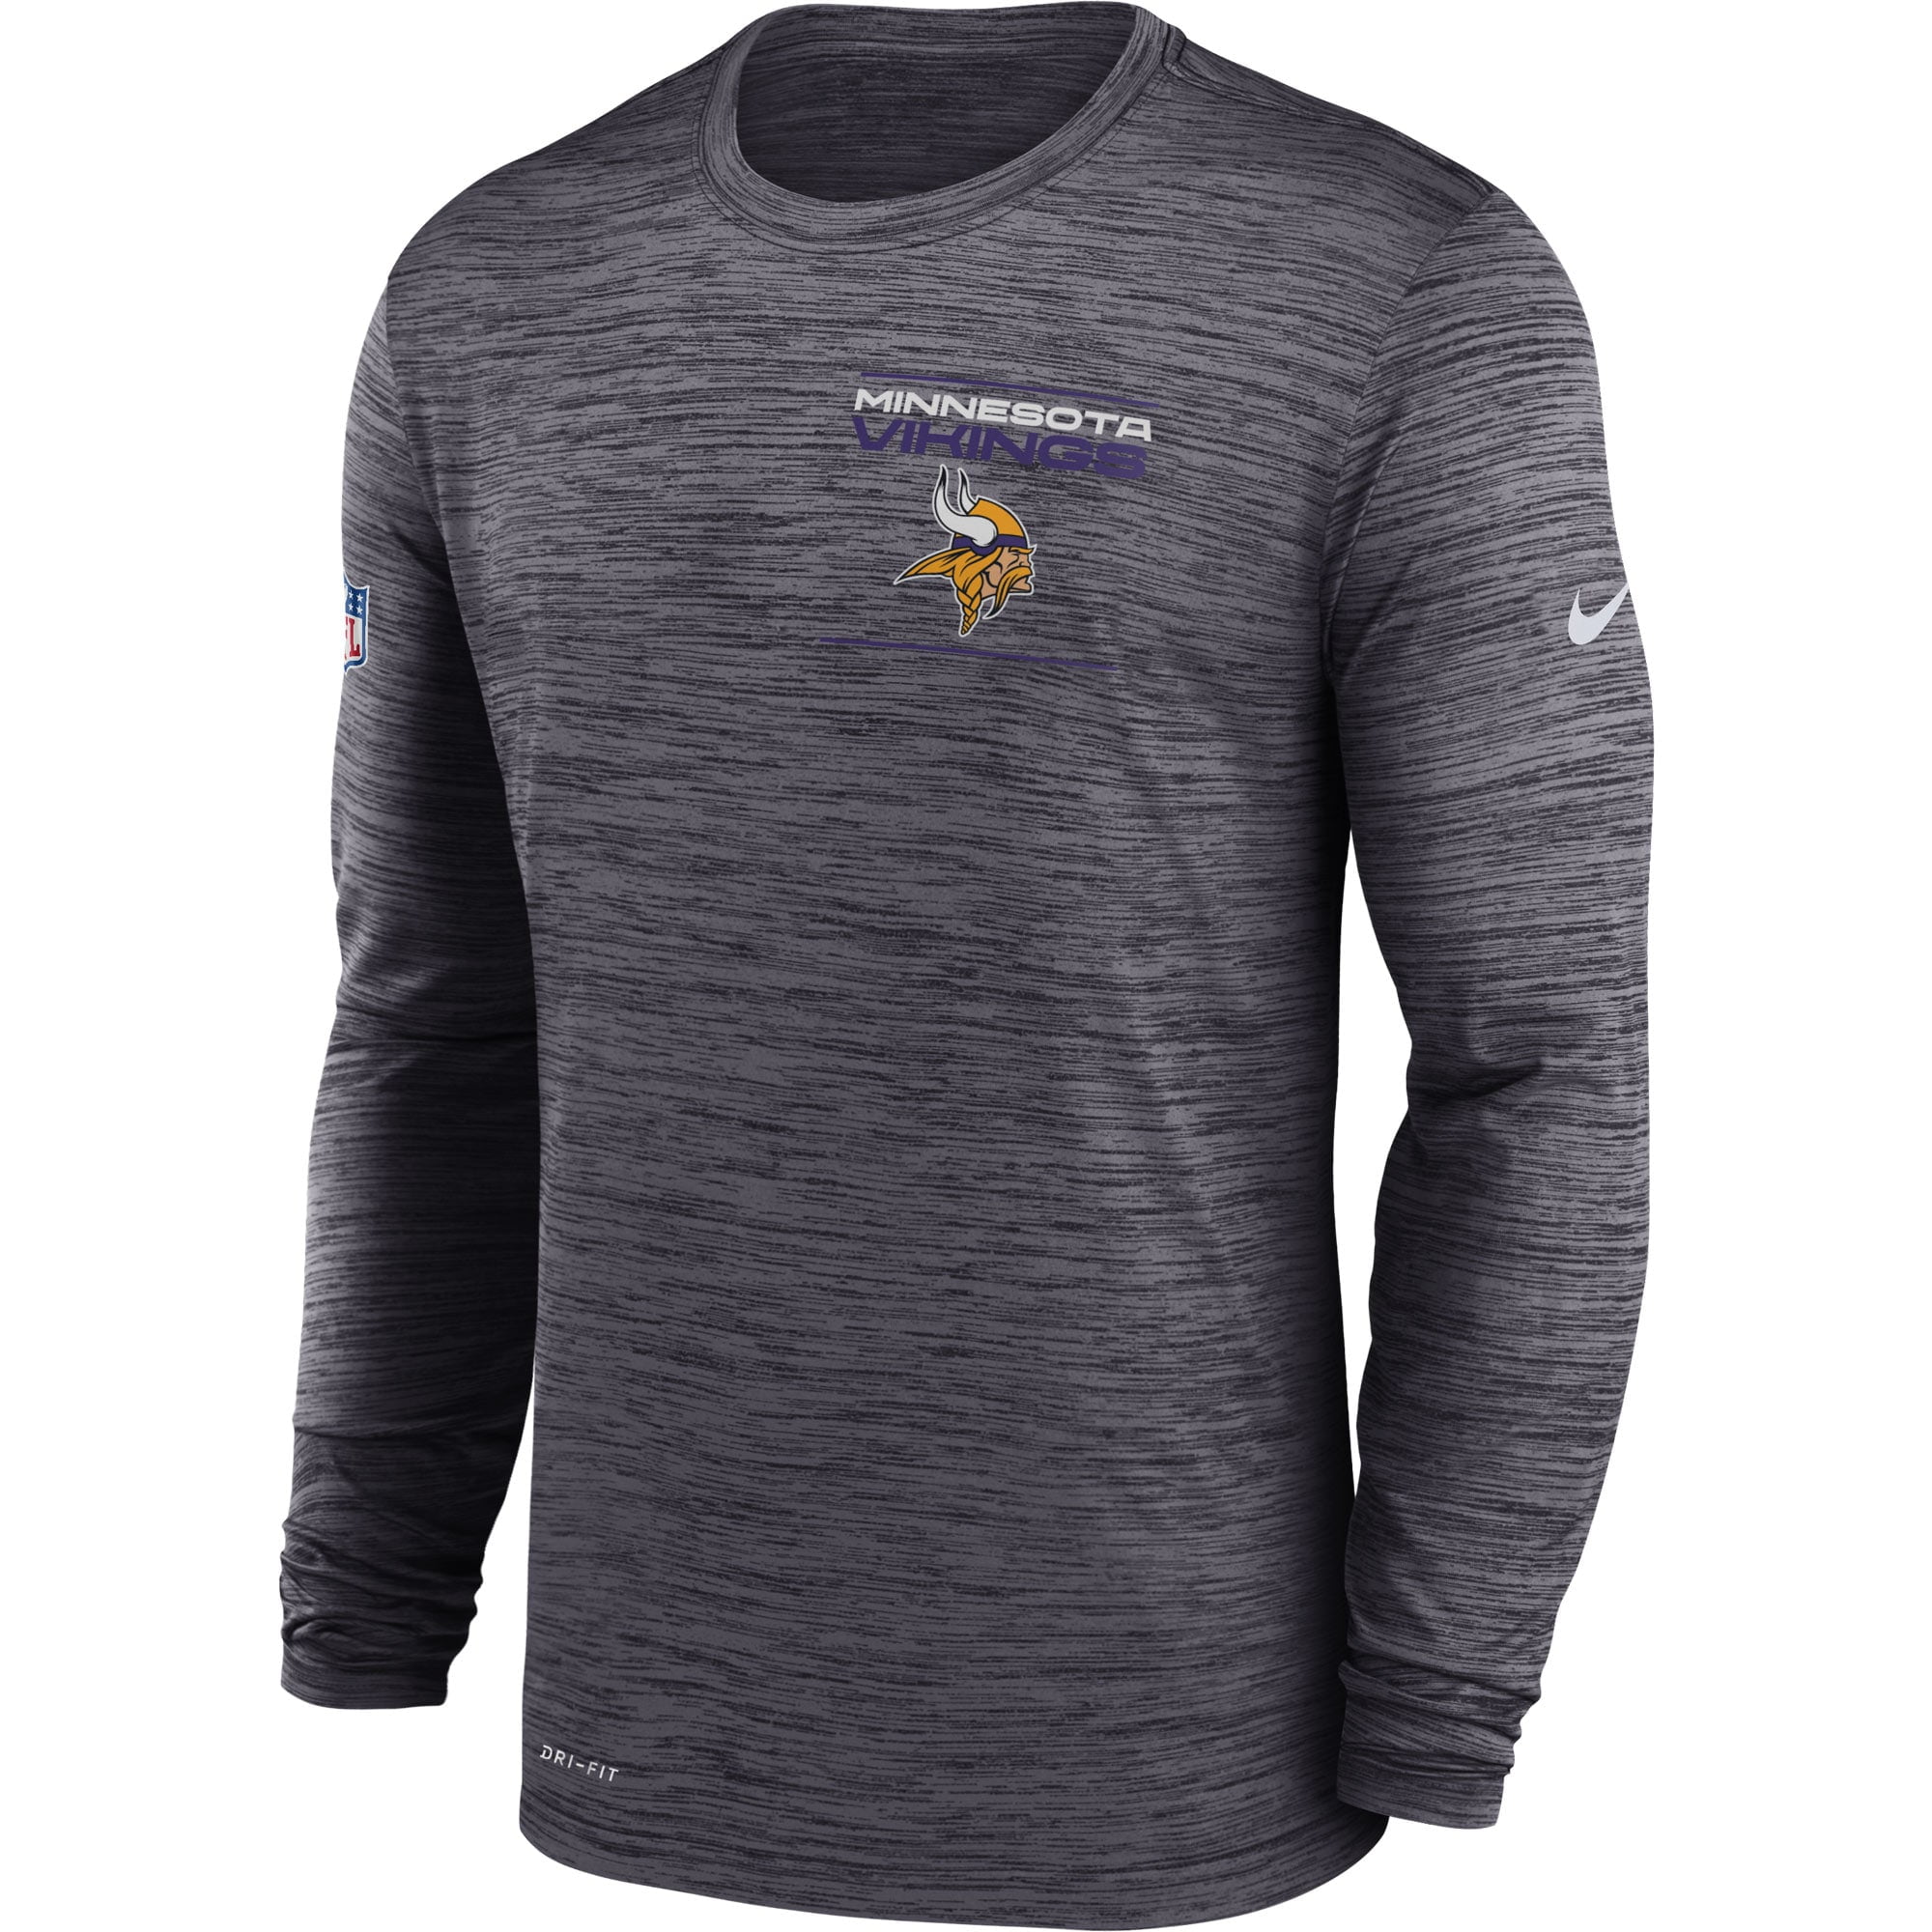 سعر الاكس بوكس Minnesota Vikings Sideline Legend Authentic Logo T-Shirt Orange ترامس الماني اصلي